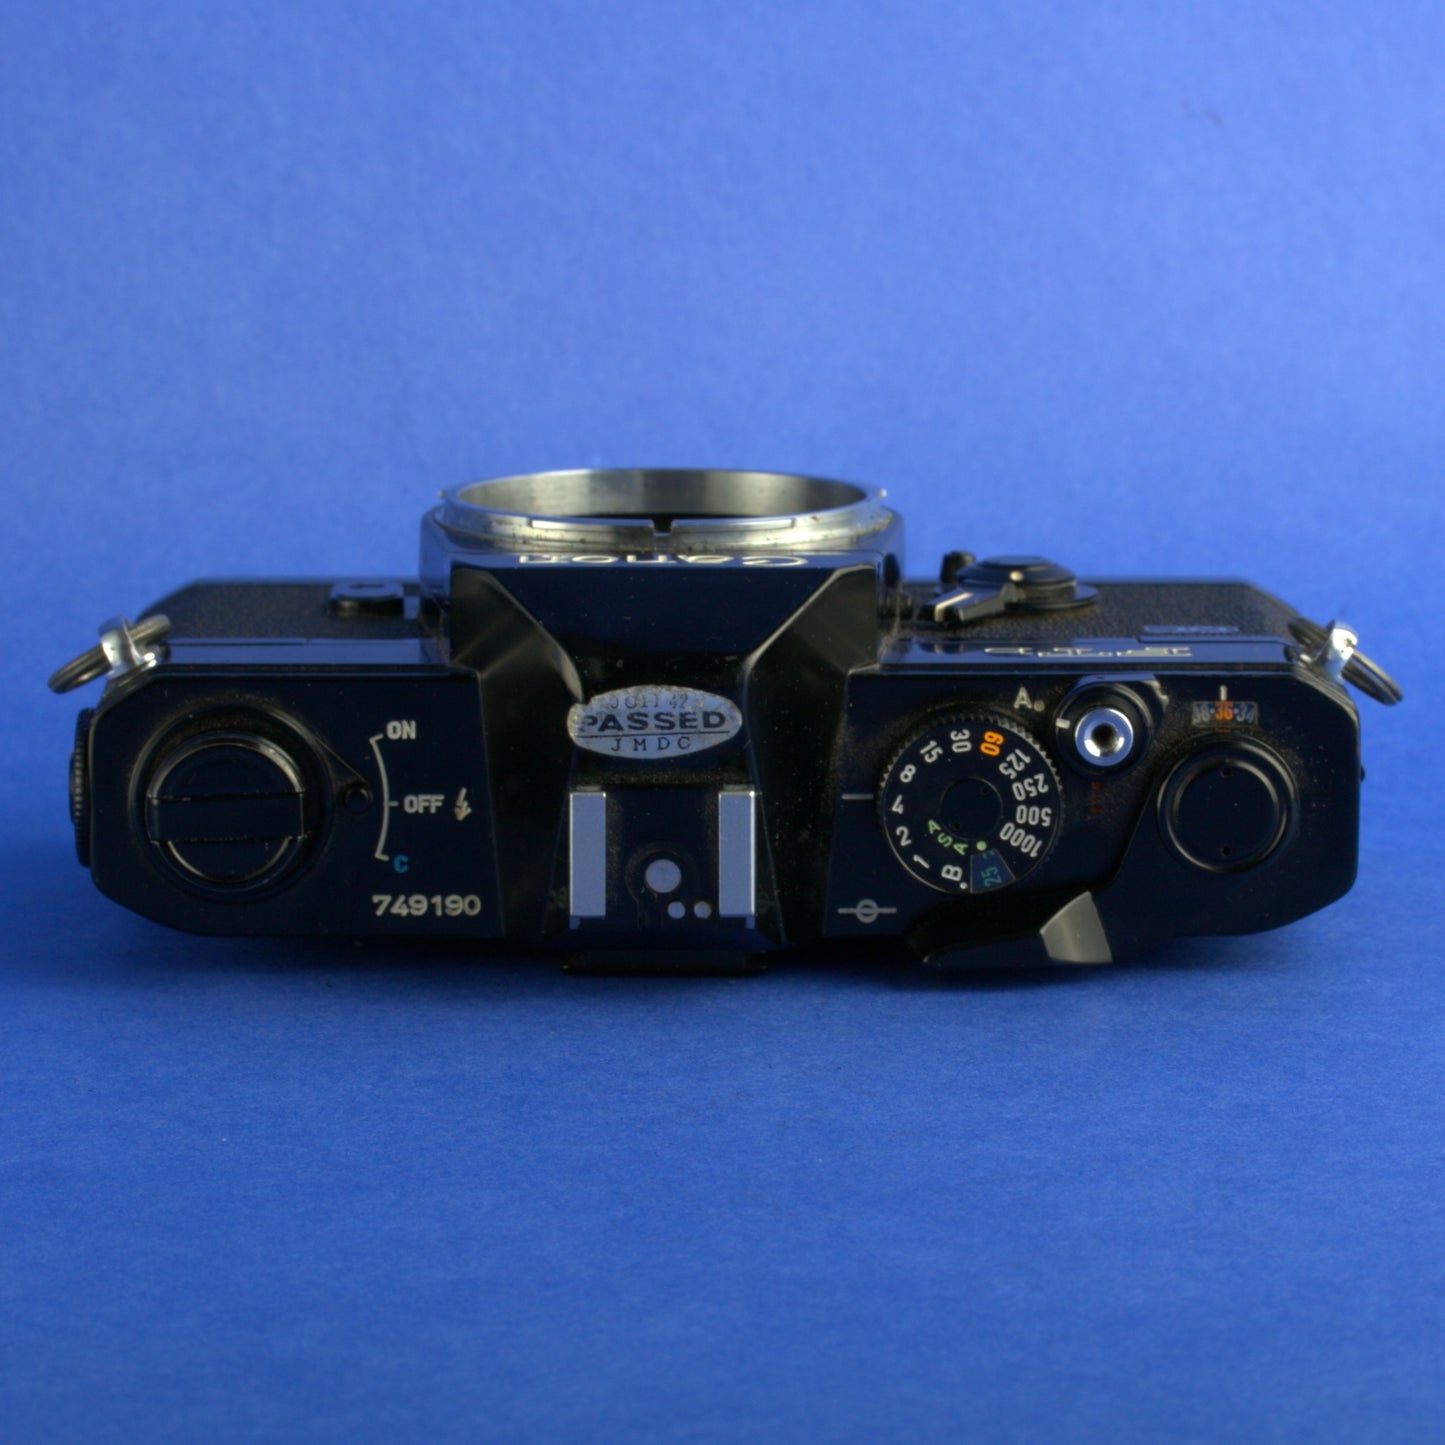 Black Canon FTb Film Camera Body